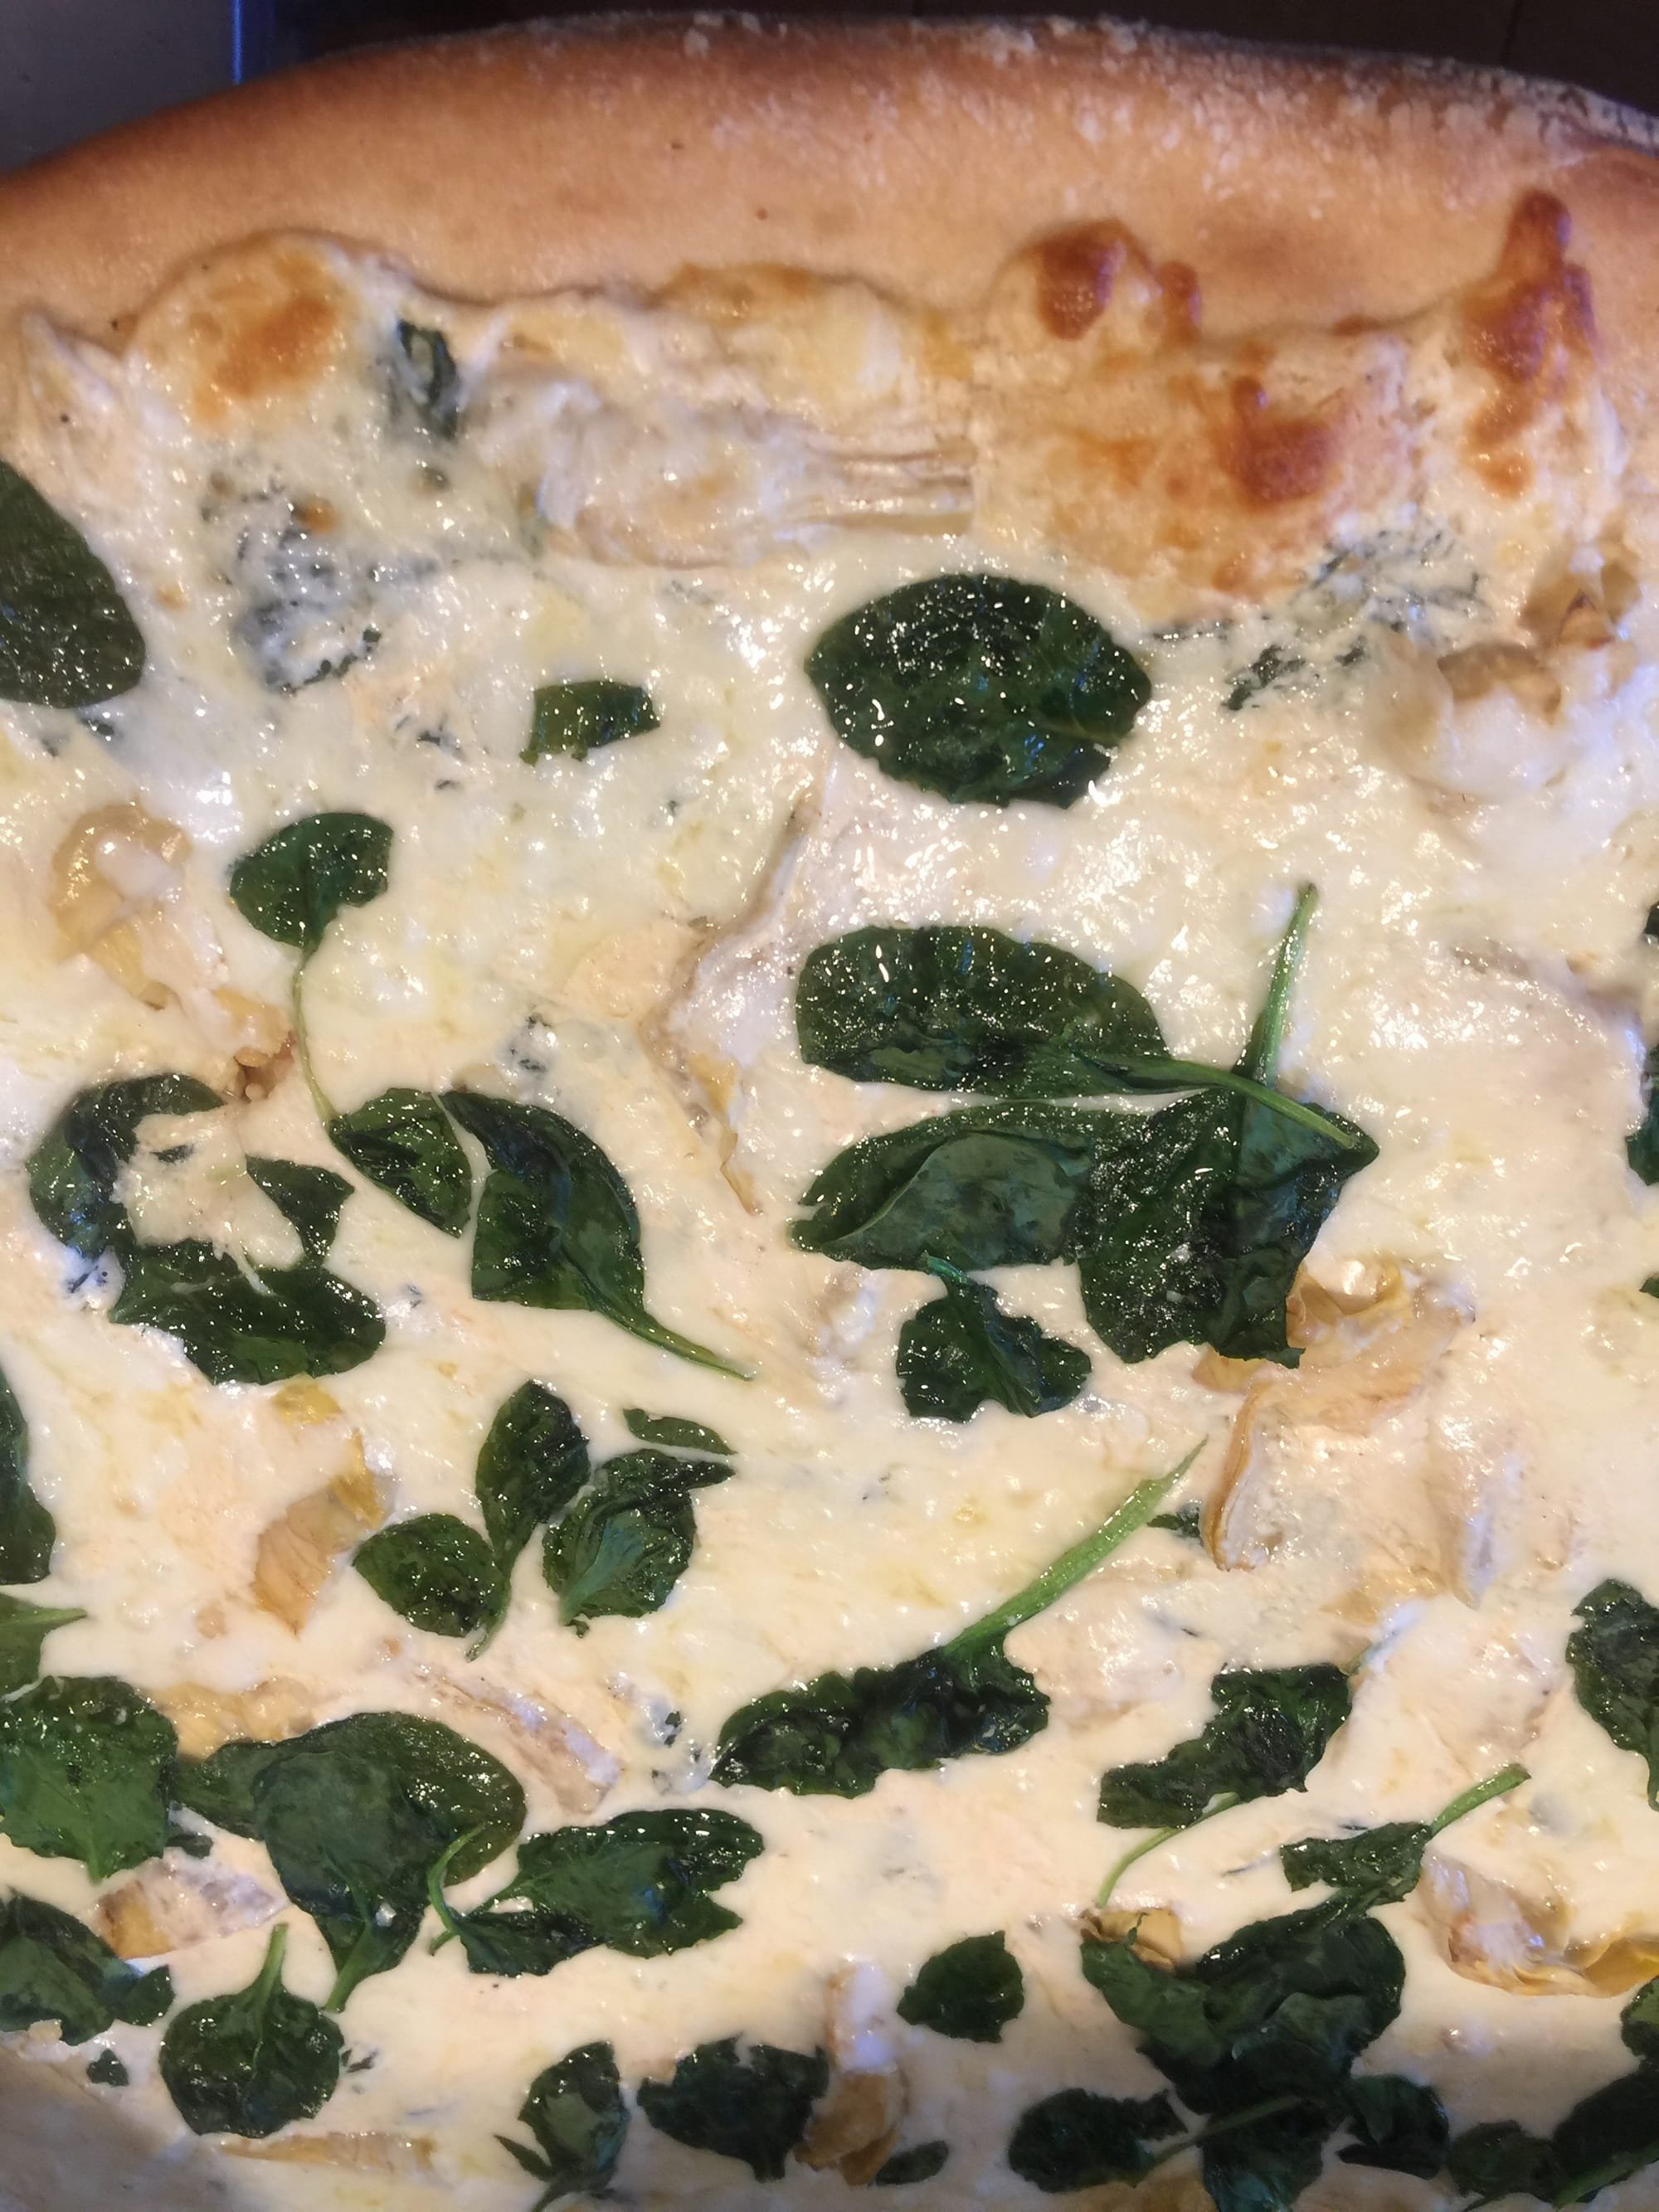 Creamy spinach and artichoke pizza